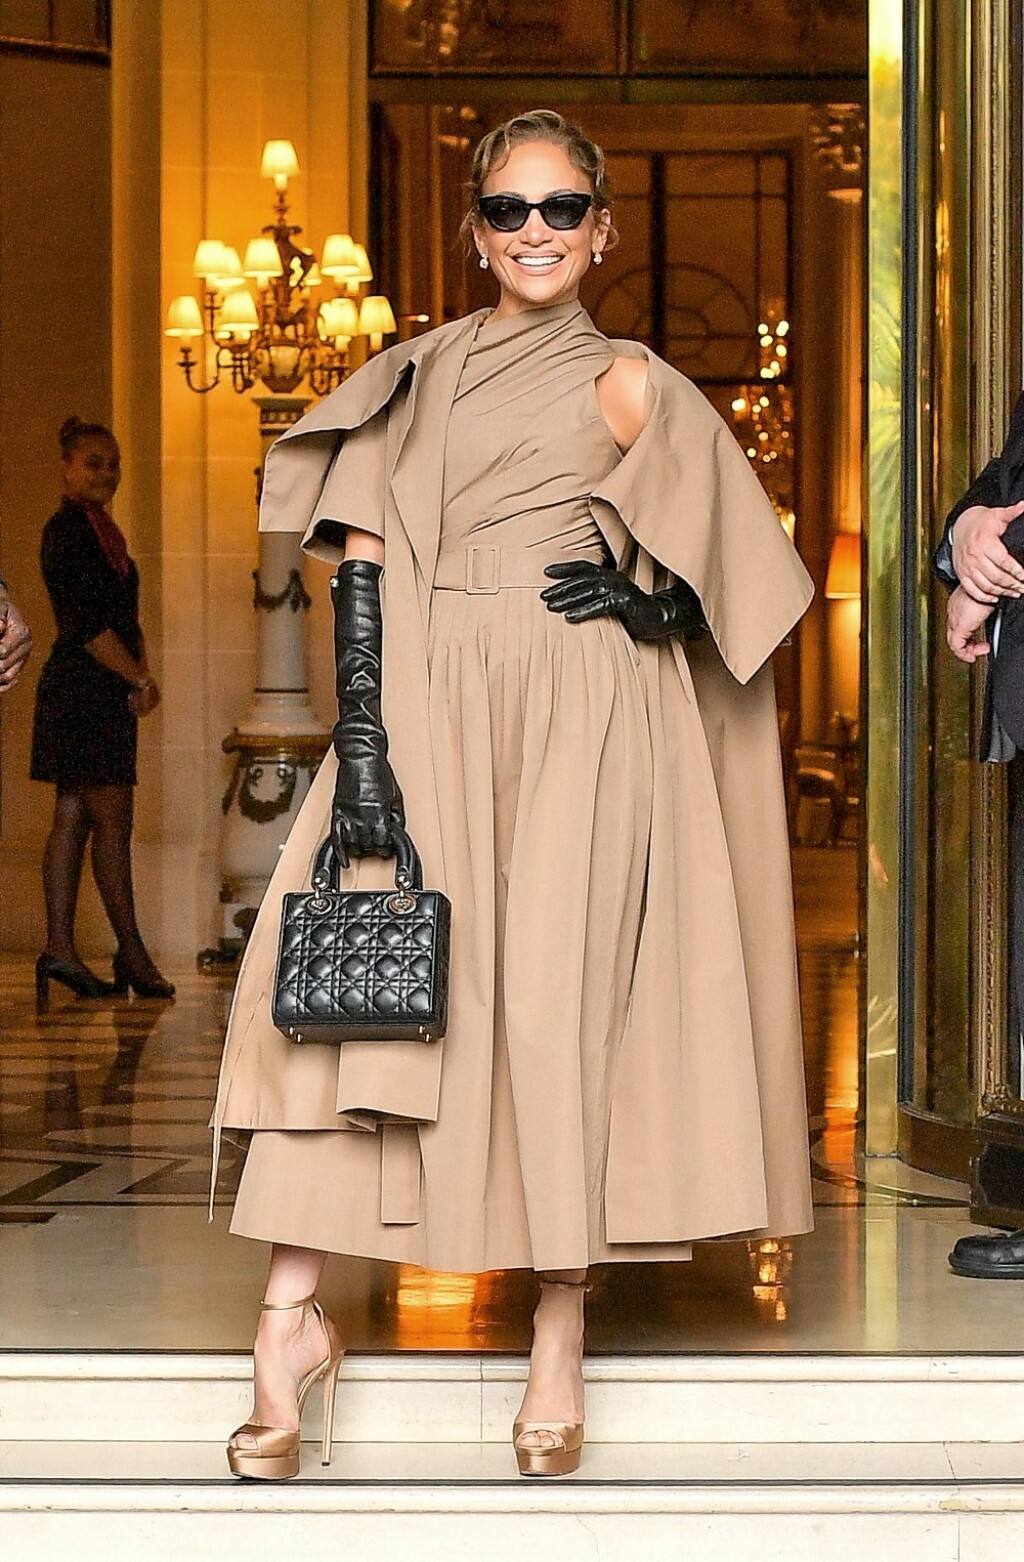 Kombinaciju u kojoj je J.Lo otišla na Diorovu reviju osmislio je stilist Rob Zangardi